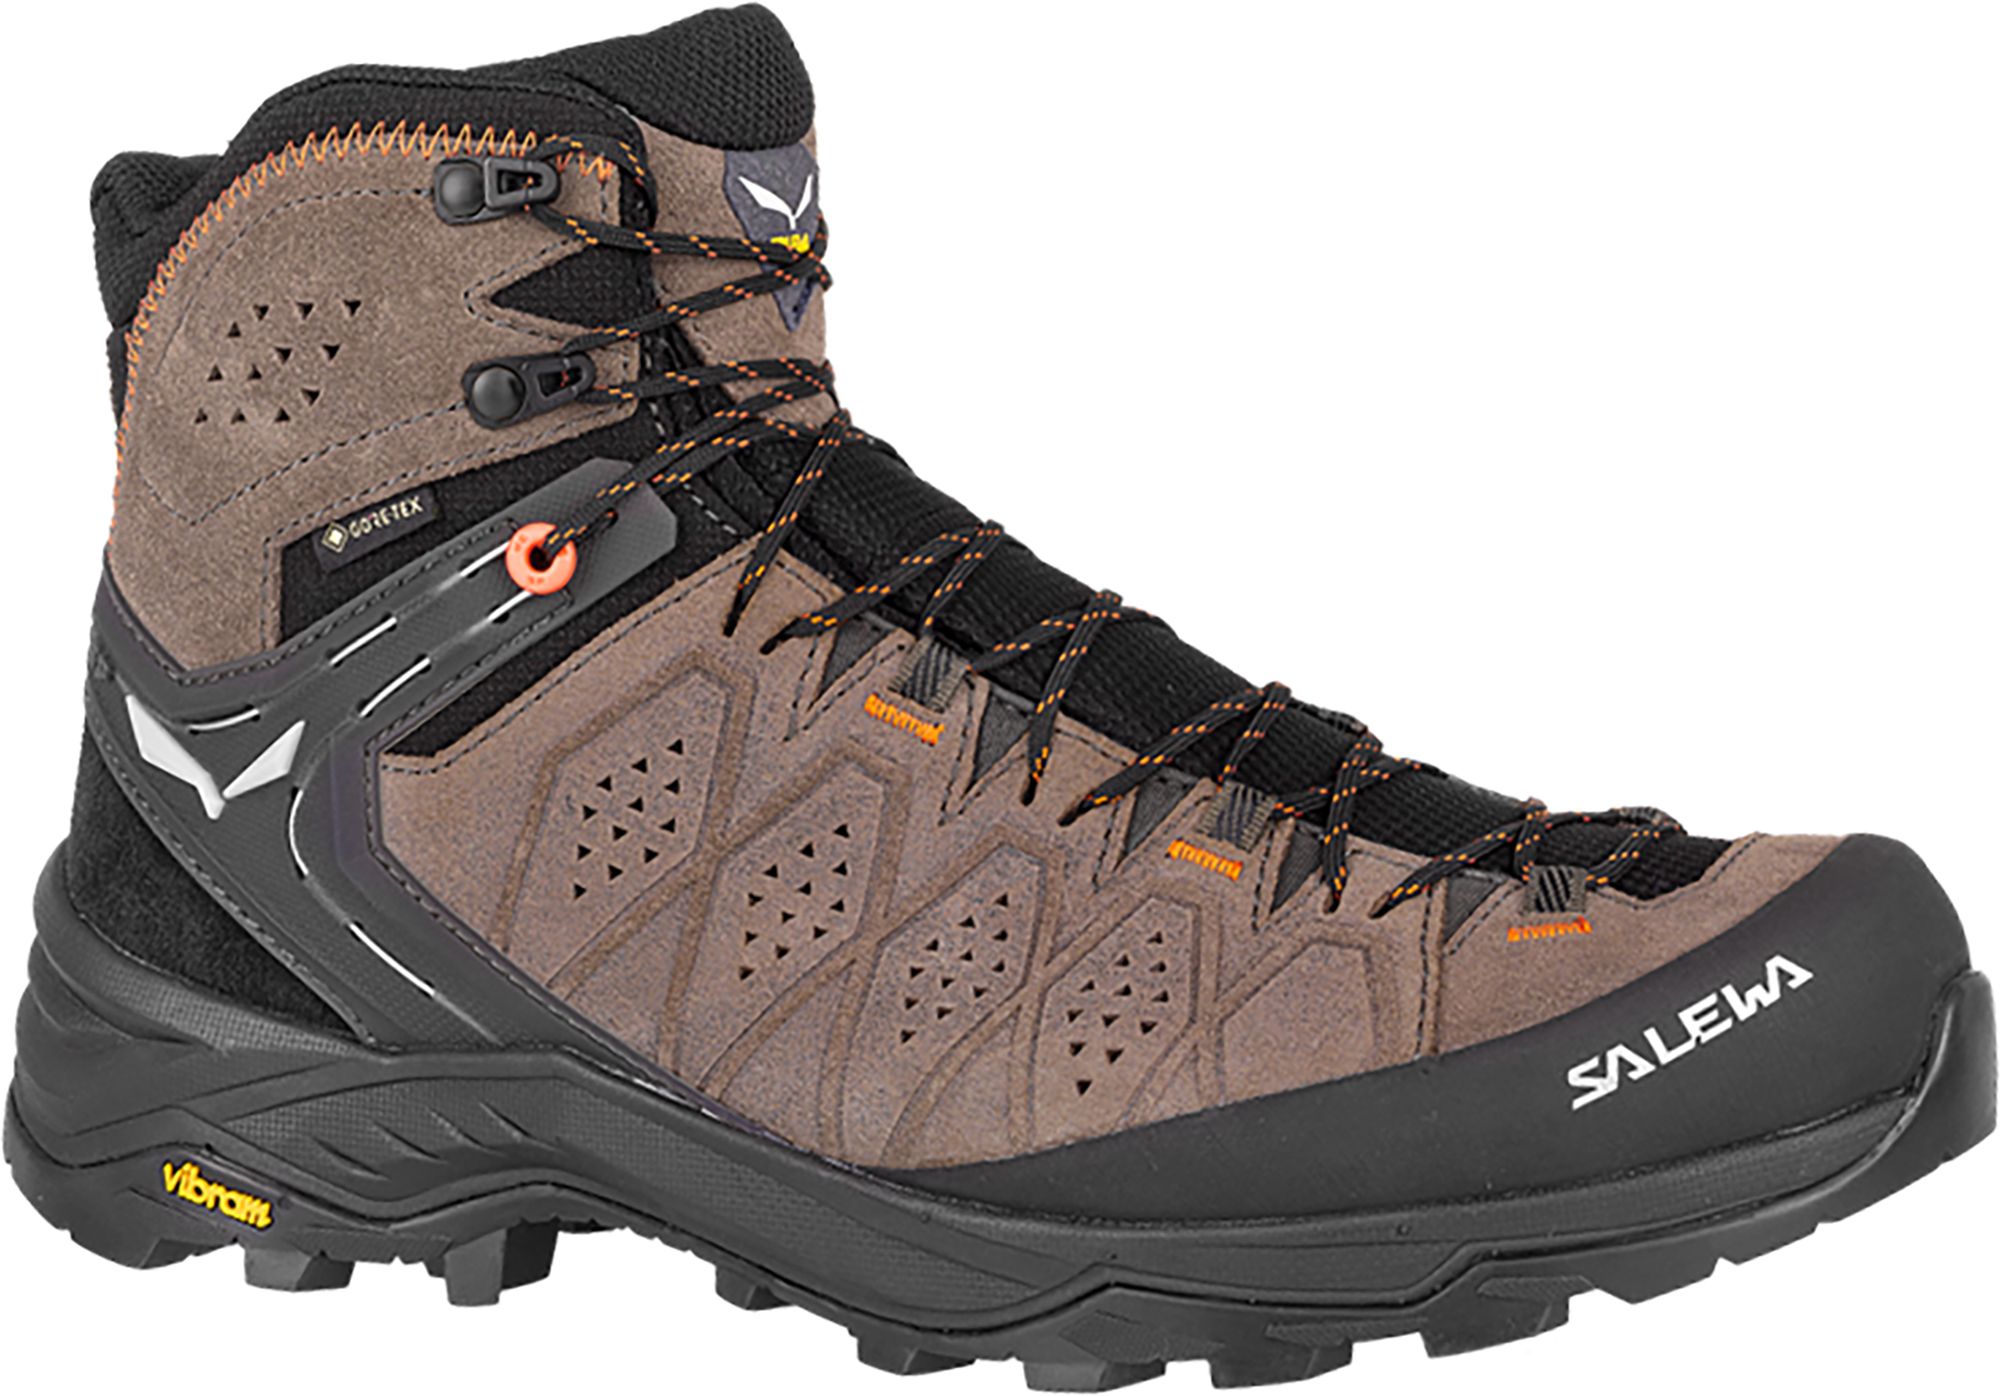 Photos - Trekking Shoes Salewa Men's Alp Trainer 2 GTX Hiking Boots, Size 9, Walnut 22IYPMMLPTRNR2 